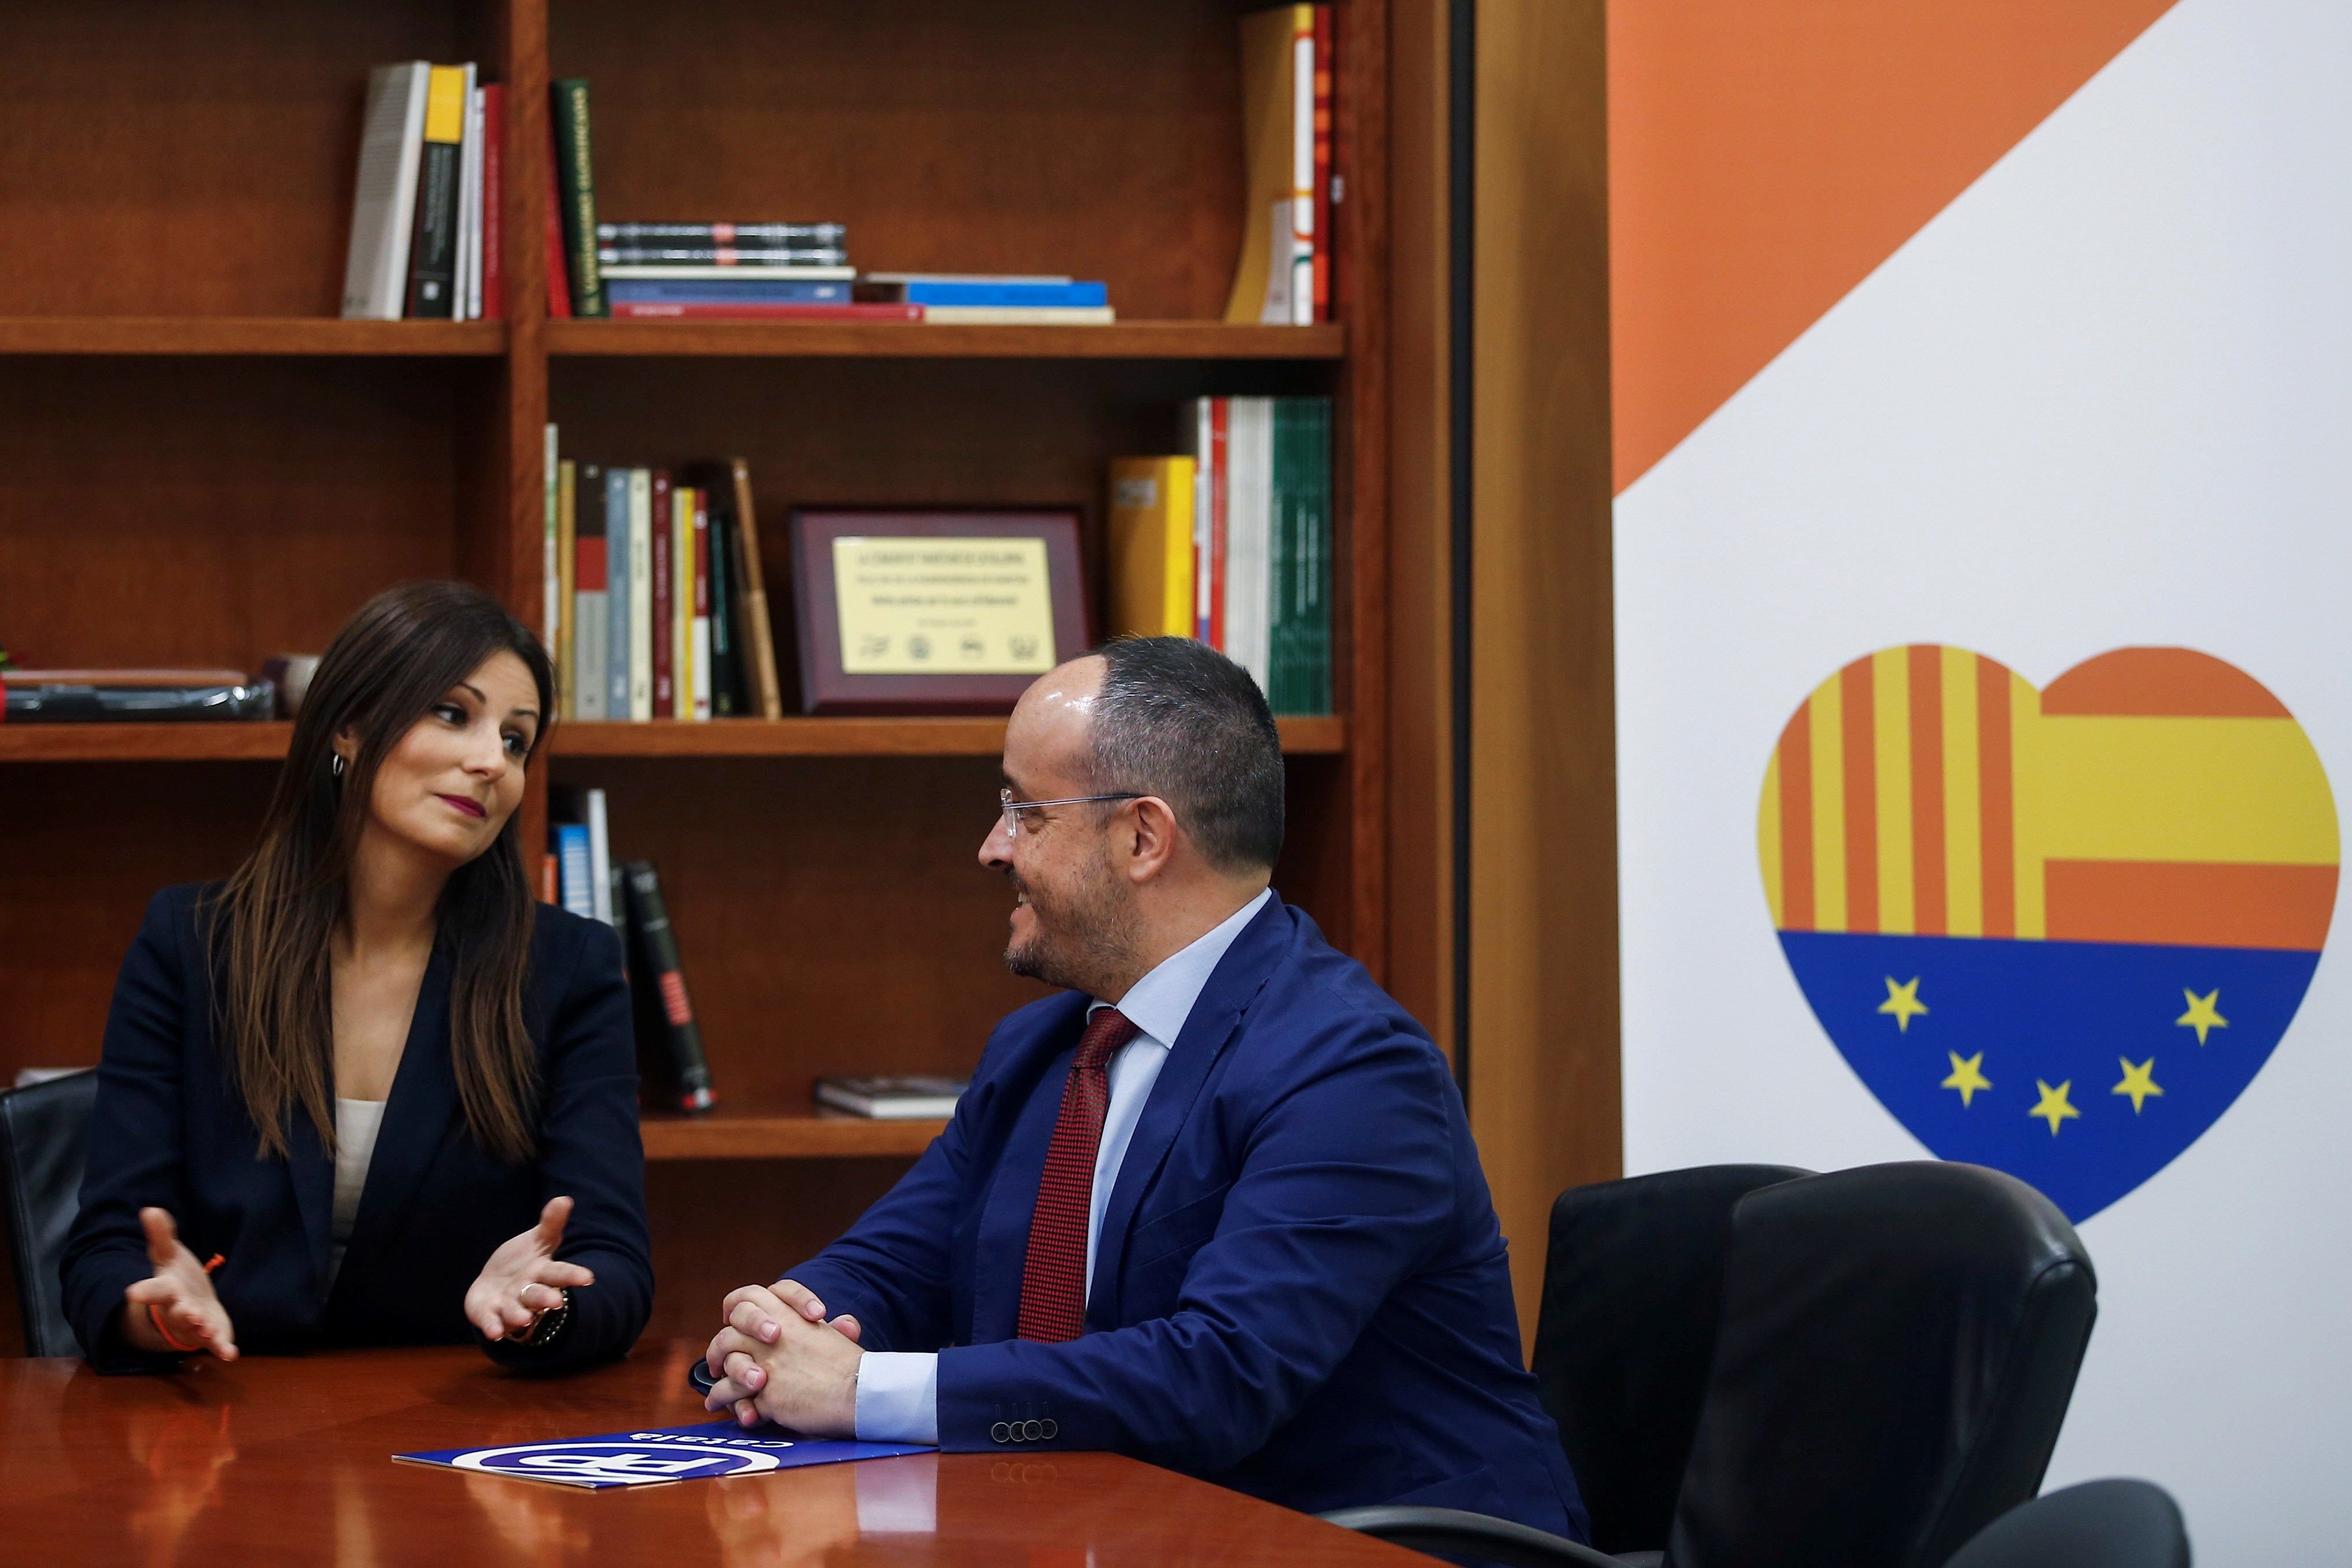 La exlíder de Cs Lorena Roldán se afilia al PP: "Seremos decisivos en Catalunya"